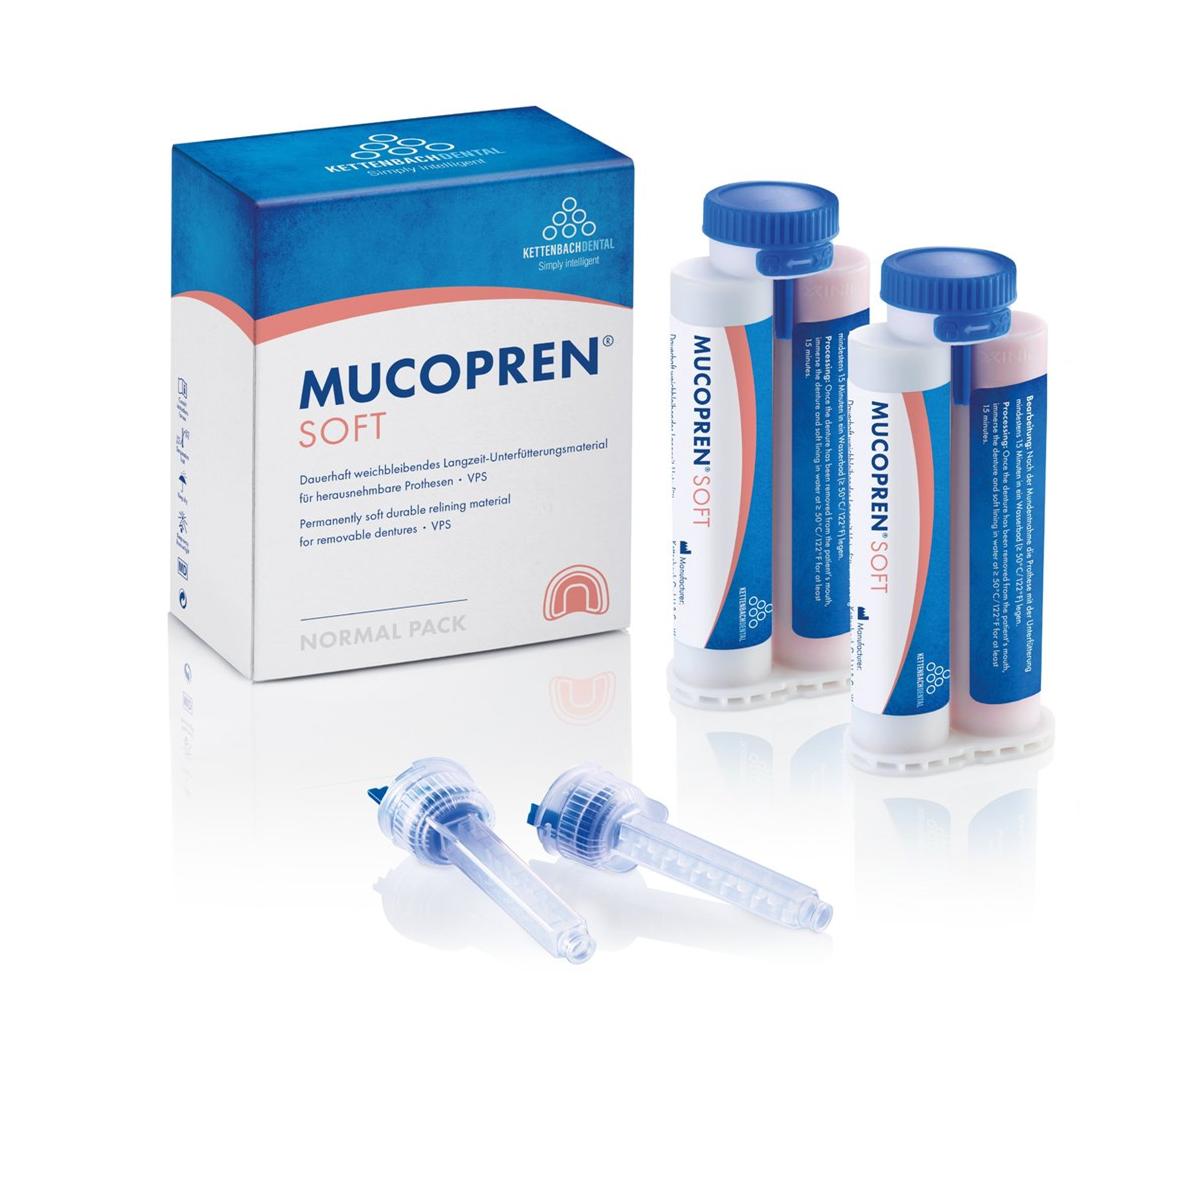 Mucopren Soft Normal Pack - Verpakking, 2x 50 ml en 6 mengtips